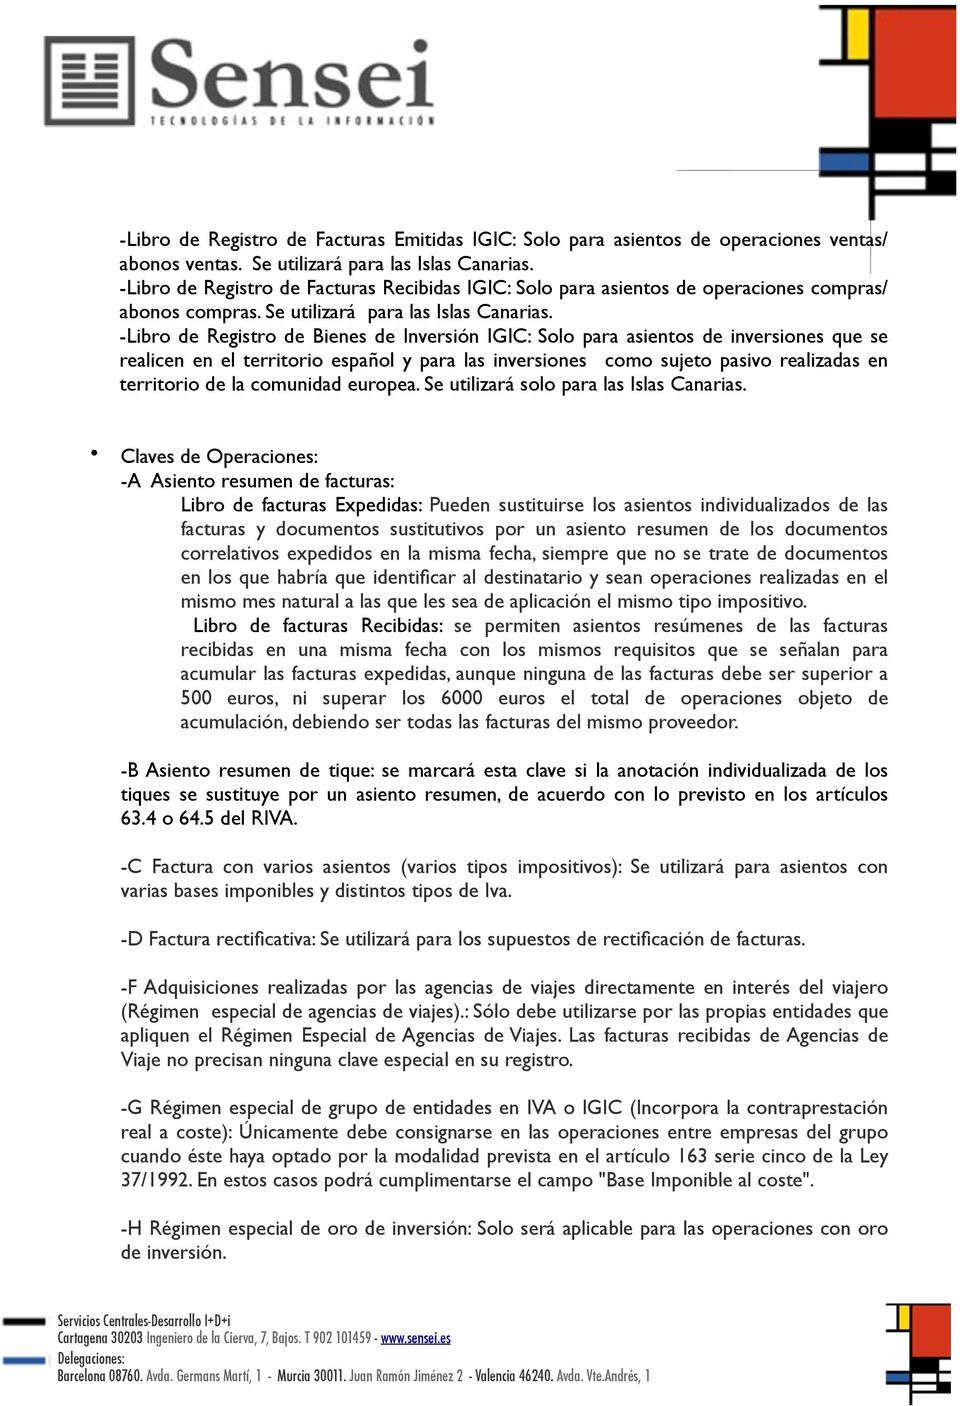 -Libro de Registro de Bienes de Inversión IGIC: Solo para asientos de inversiones que se realicen en el territorio español y para las inversiones como sujeto pasivo realizadas en territorio de la